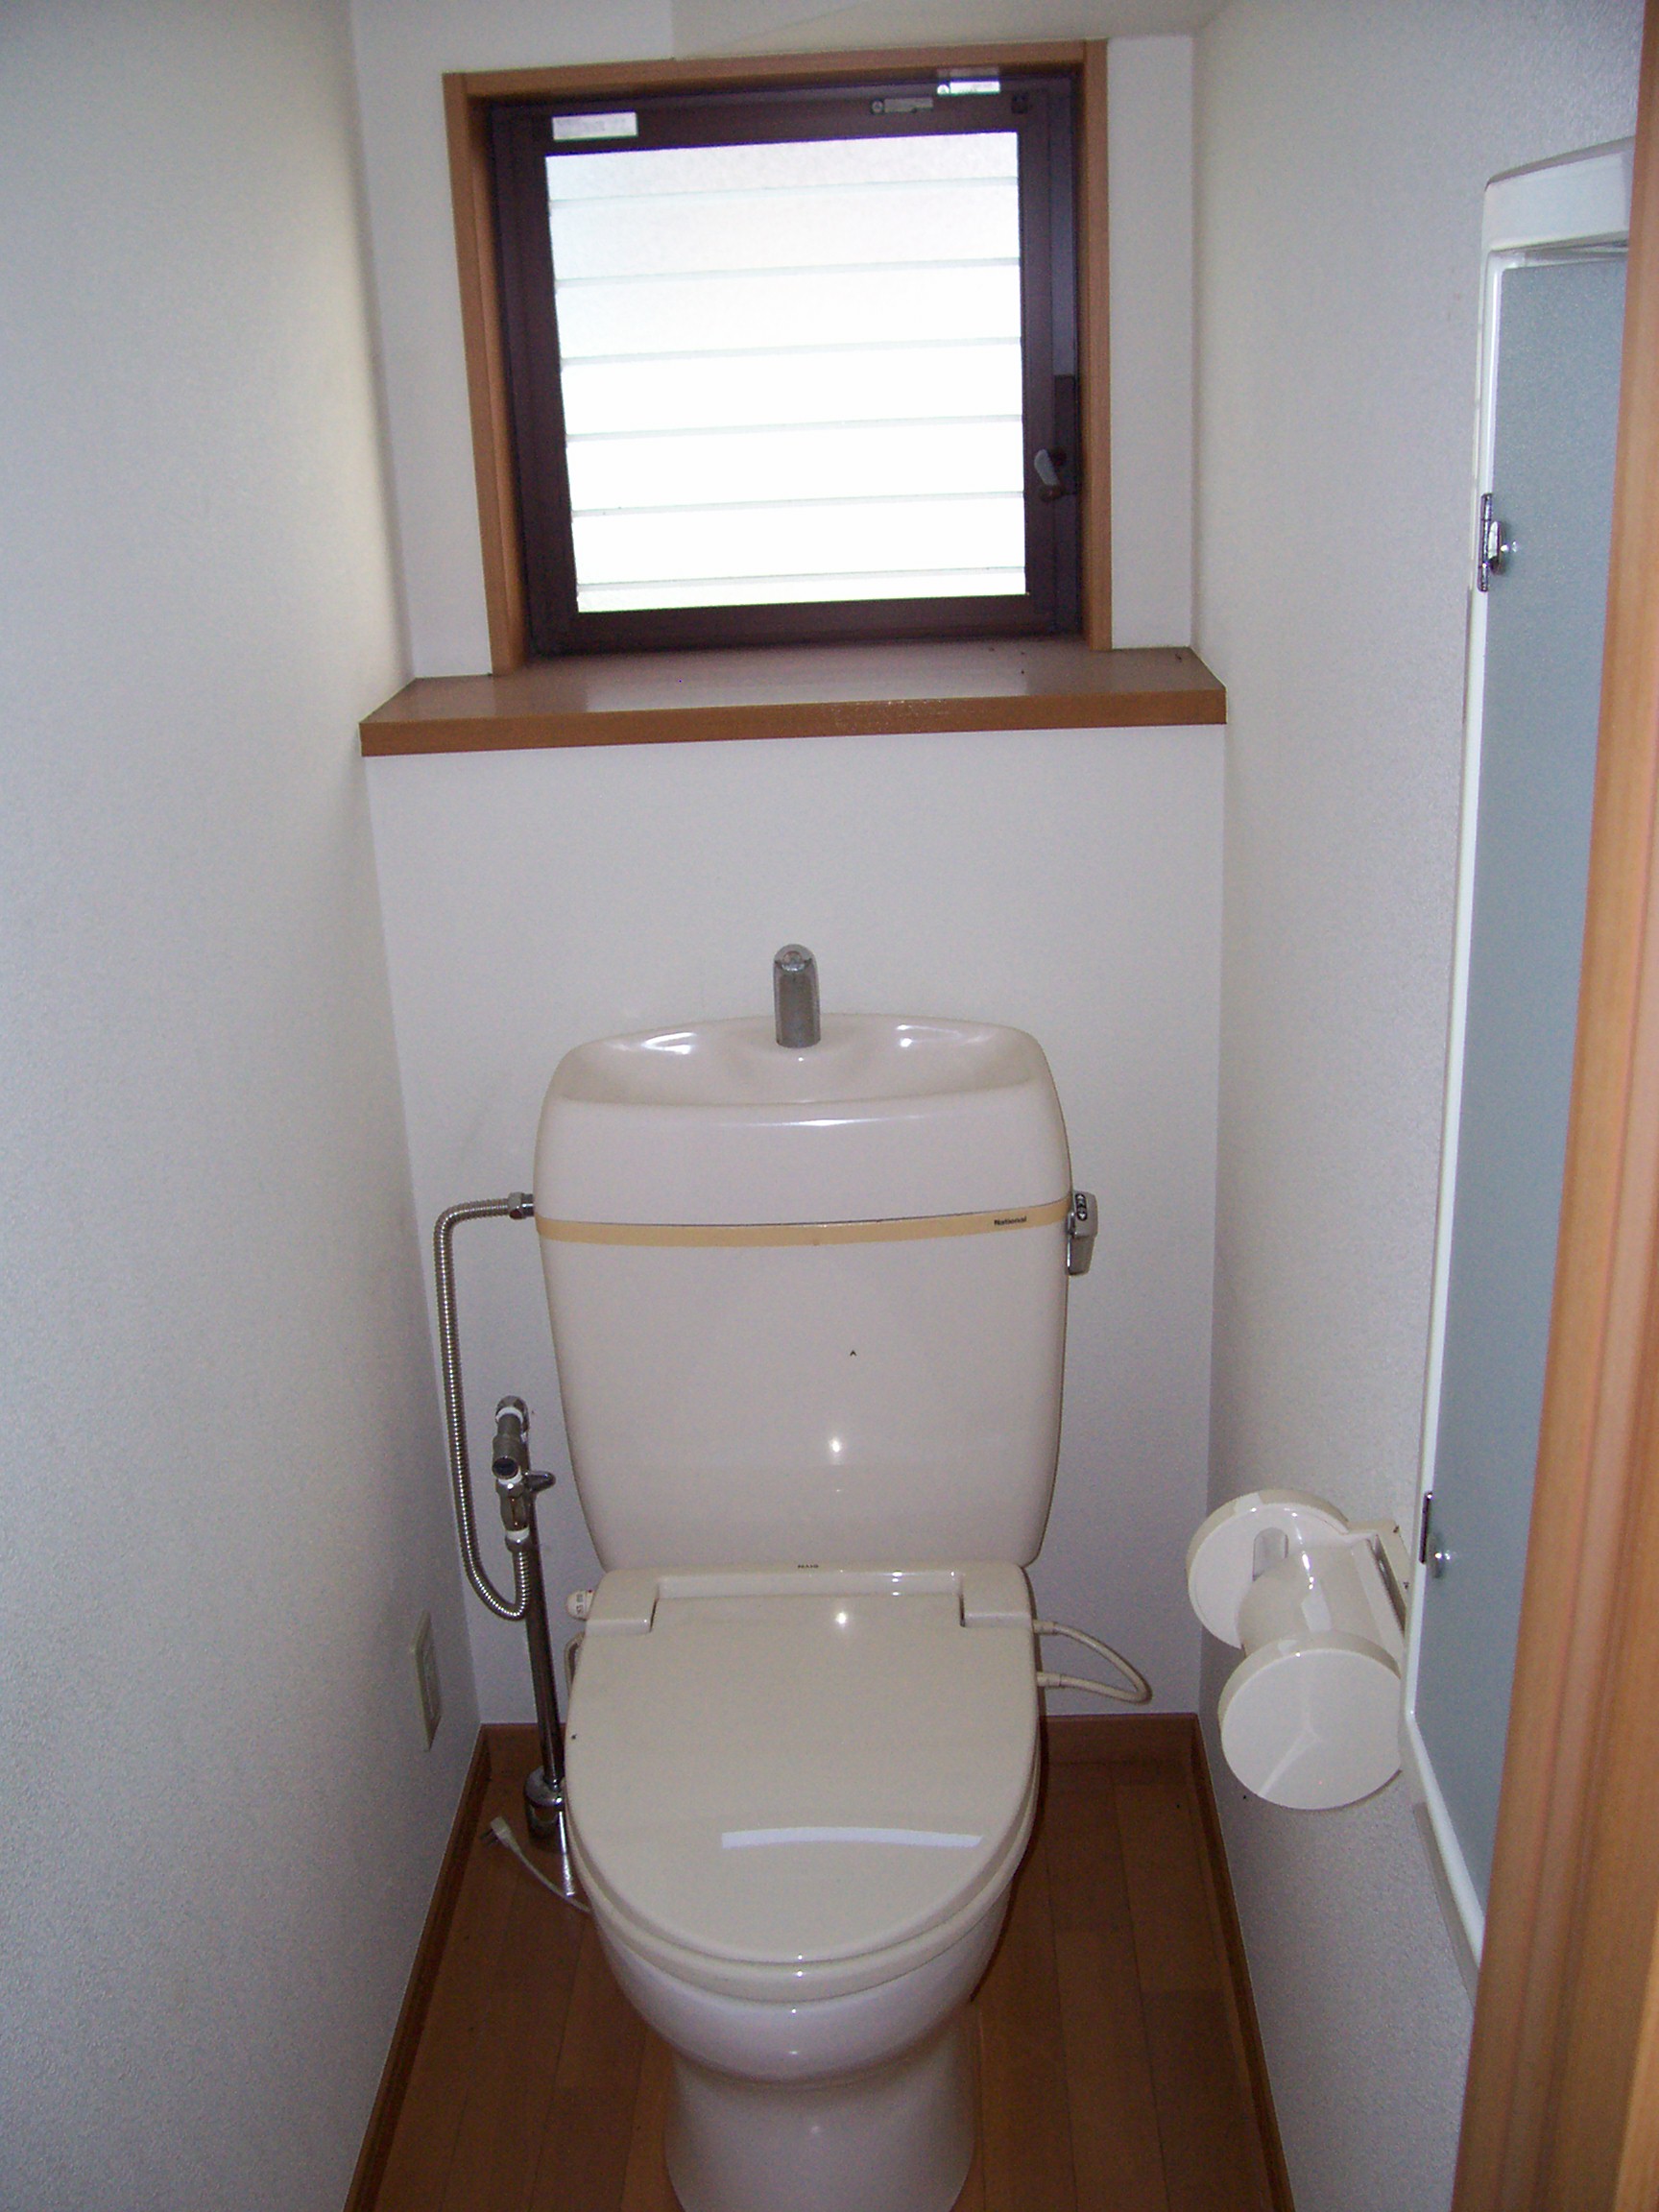 Toilet. Warm toilet toilet